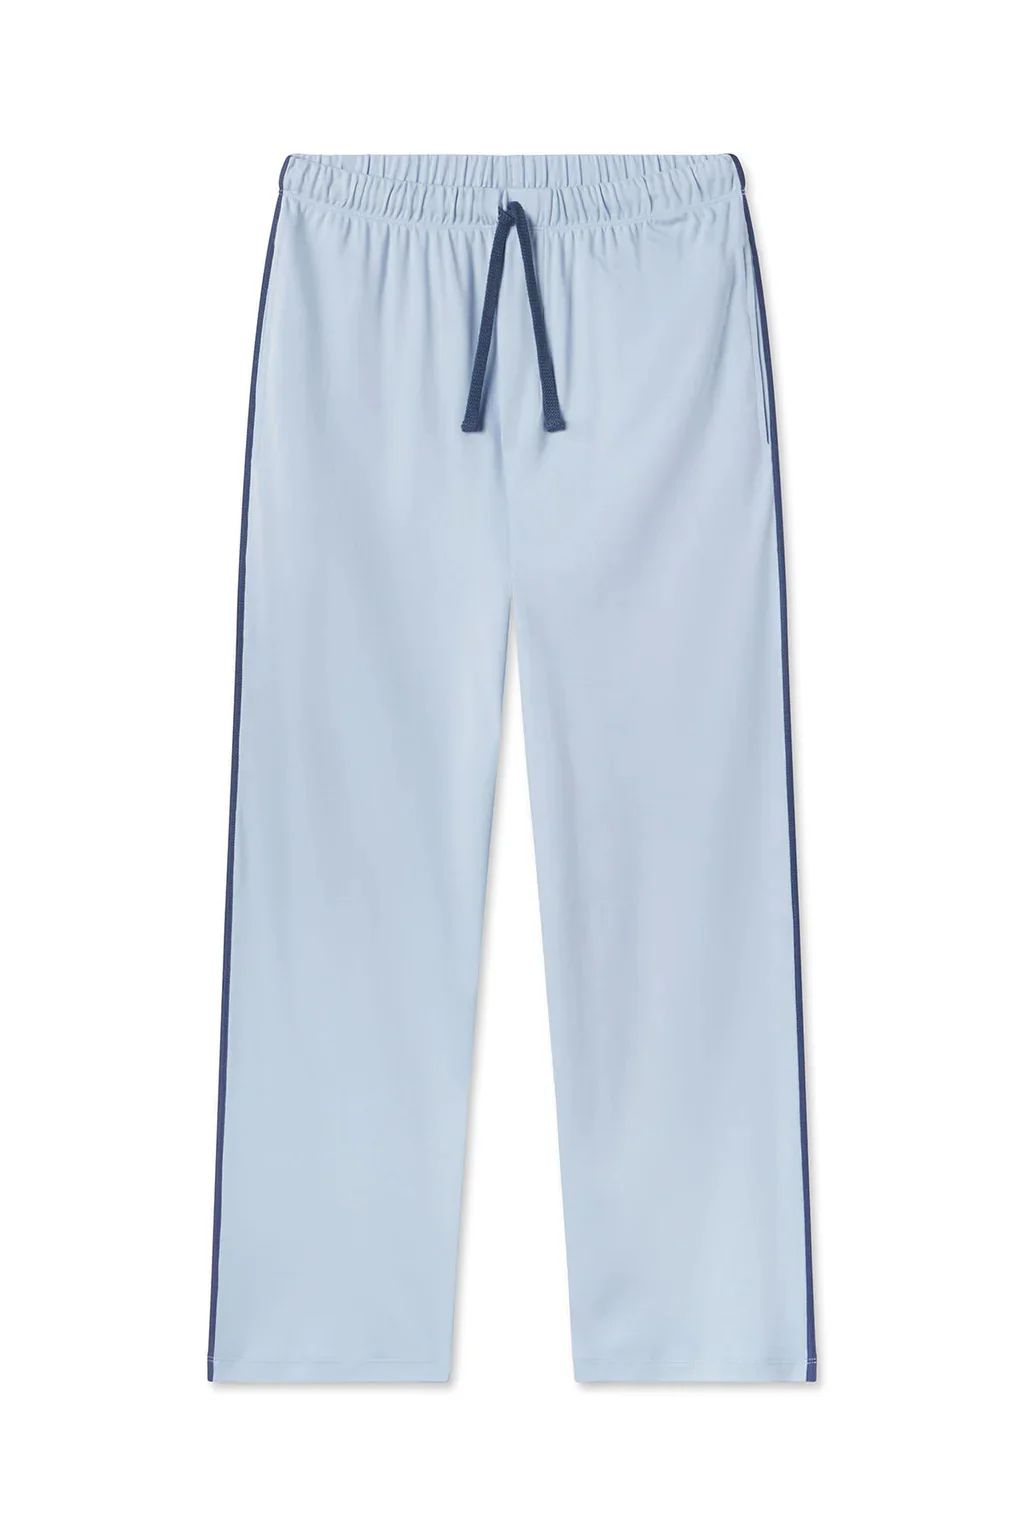 Men's Pima Slumber Pants in French Blue | Lake Pajamas